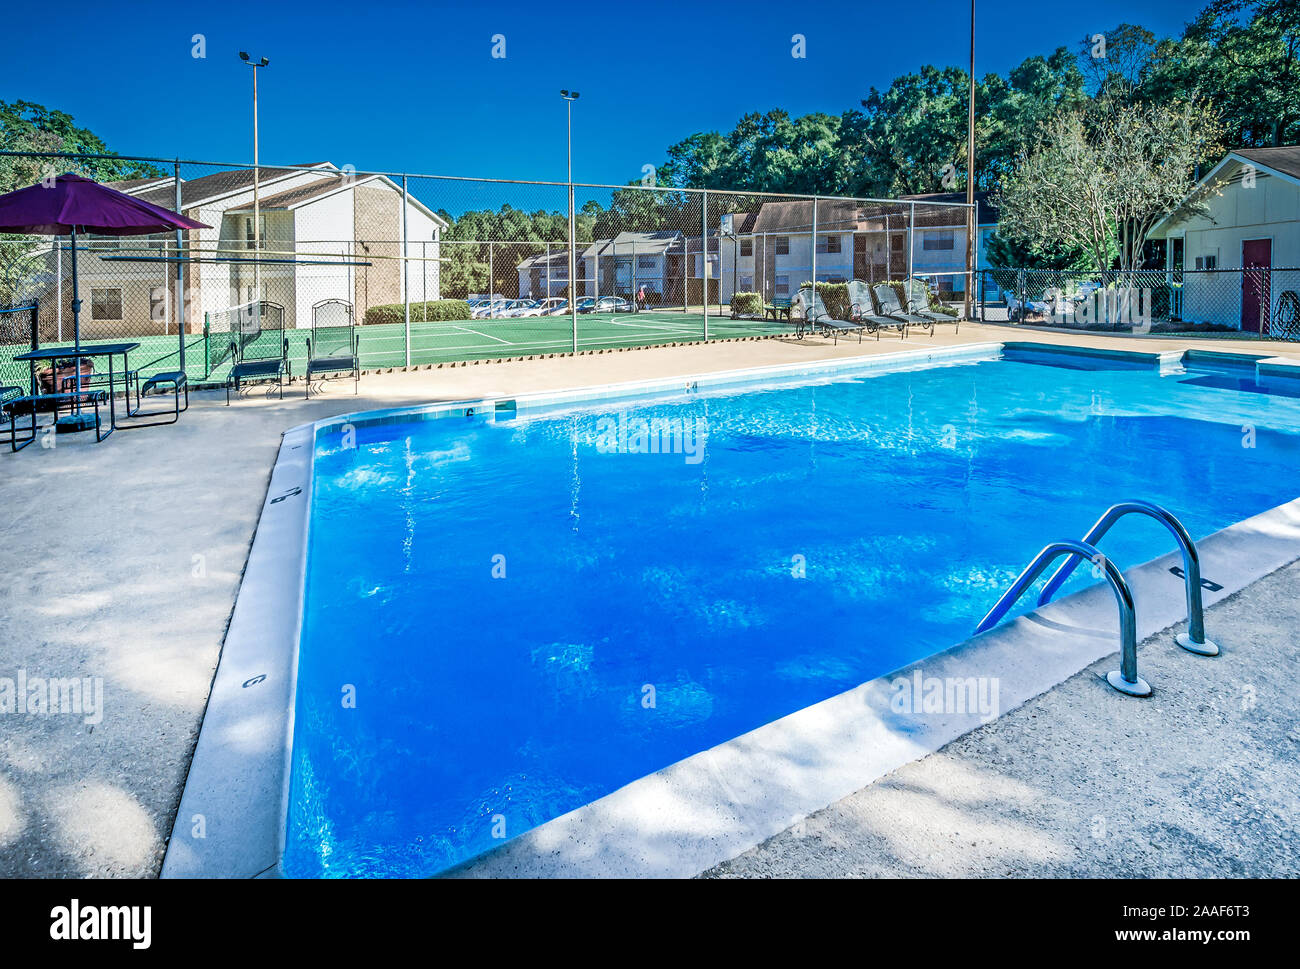 La piscine de l'hôtel Four Seasons apartments est représenté à Mobile, Alabama. Le complexe d'appartements est géré par la société de gestion de Sealy. Banque D'Images